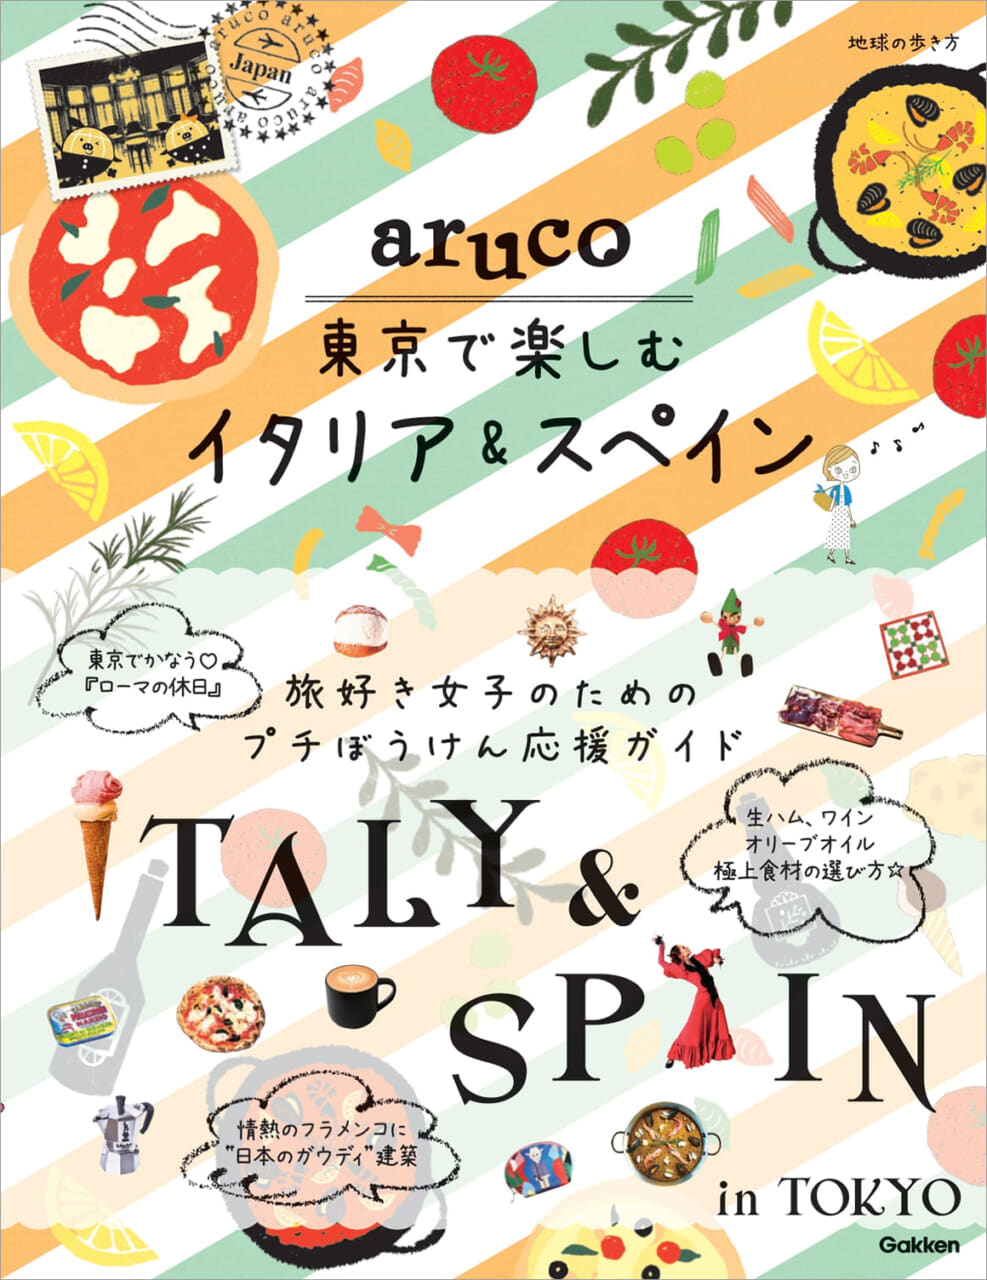 憧れのイタリアとスペイン、2ヵ国周遊旅行が東京でかなう！地球の歩き方『aruco東京で楽しむイタリア＆スペイン』が新登場